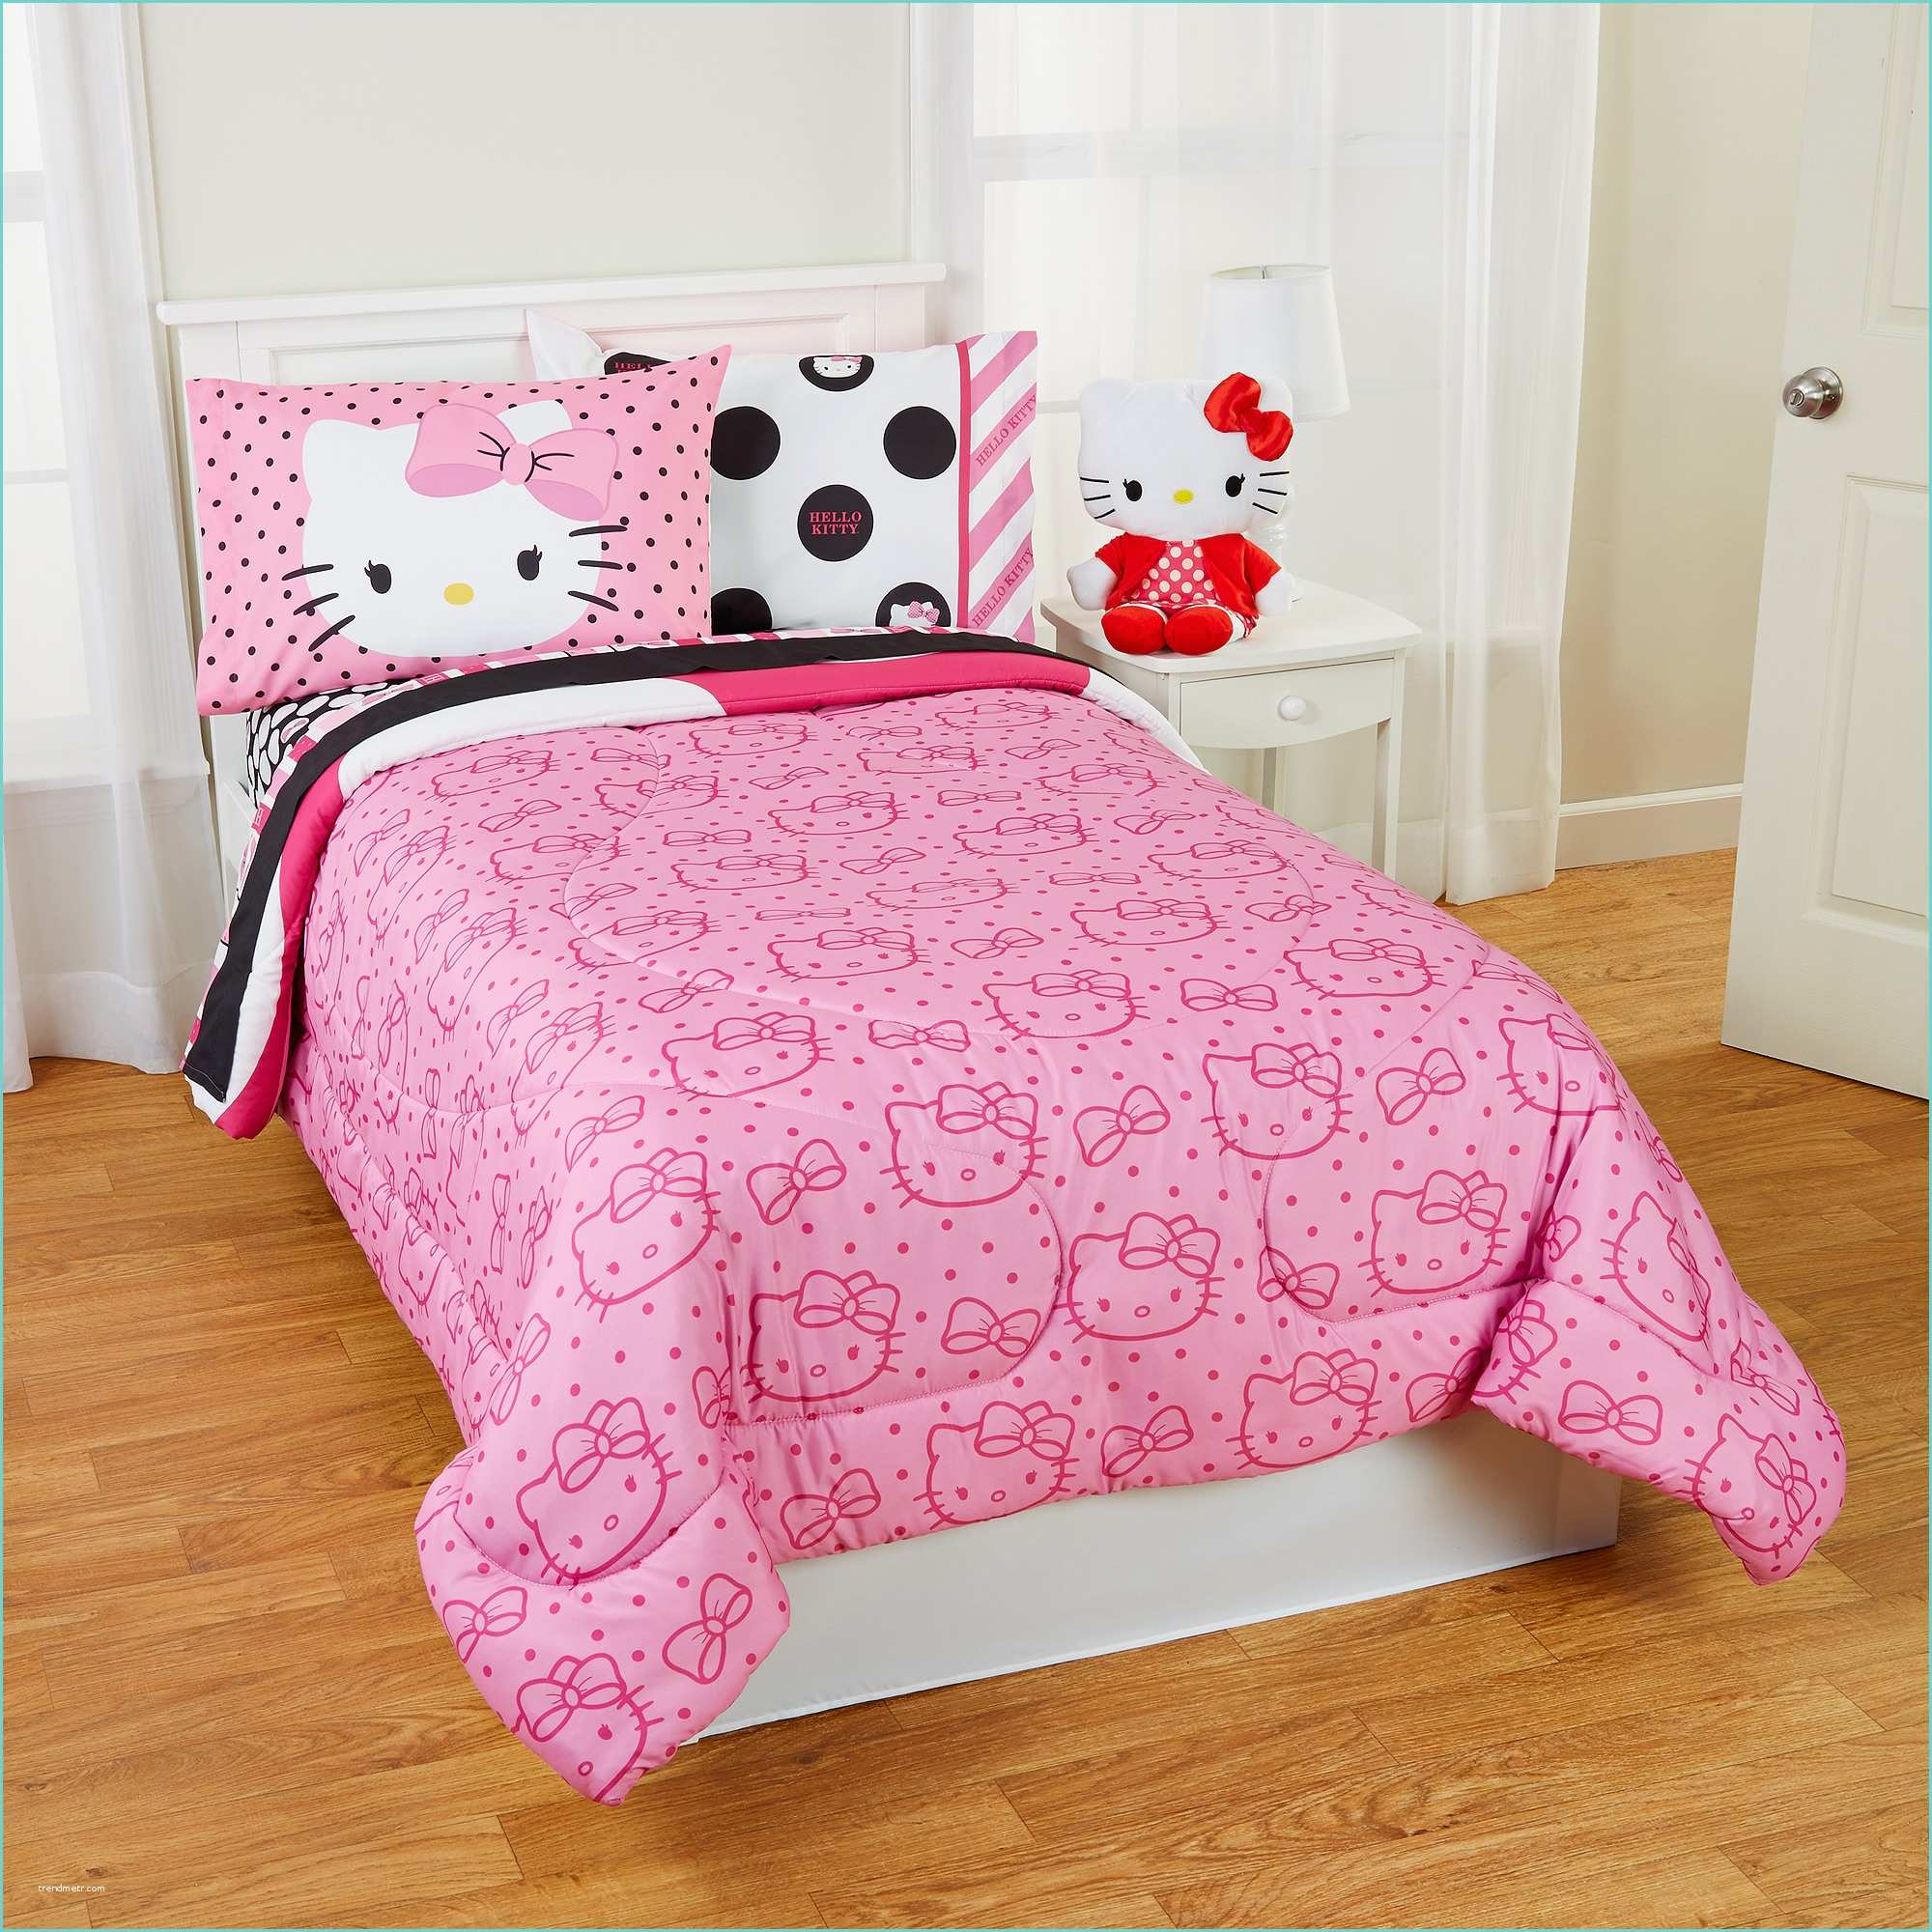 Hello Kitty Comforter Set Hello Kitty Bed Set Plus Hello Kitty Ballerina Crib